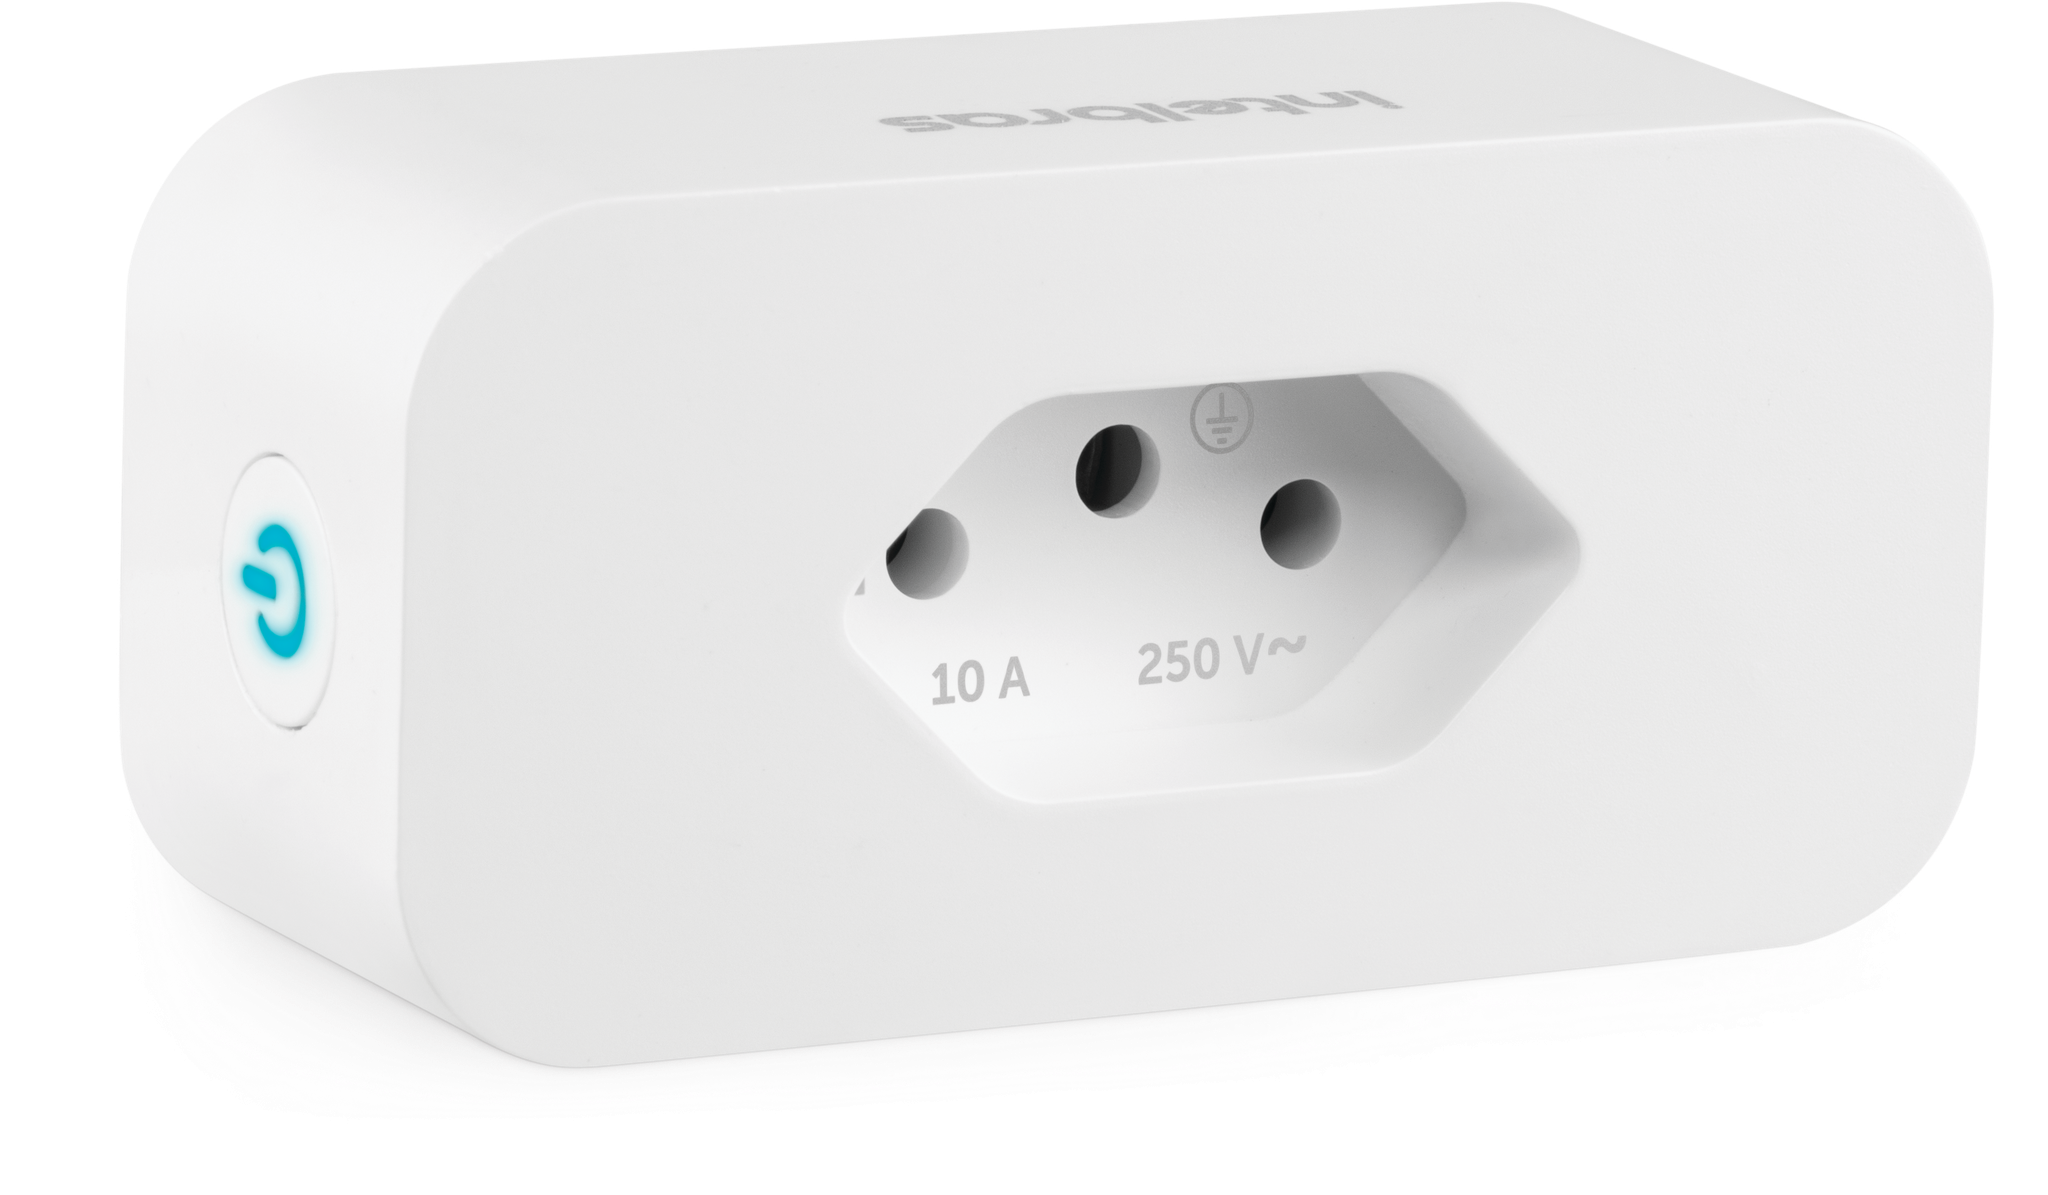 Tomada Inteligente Conector Smart Wifi Intelbras Ews 301 Linha Izy Casa Inteligente Automacao Reside - 4